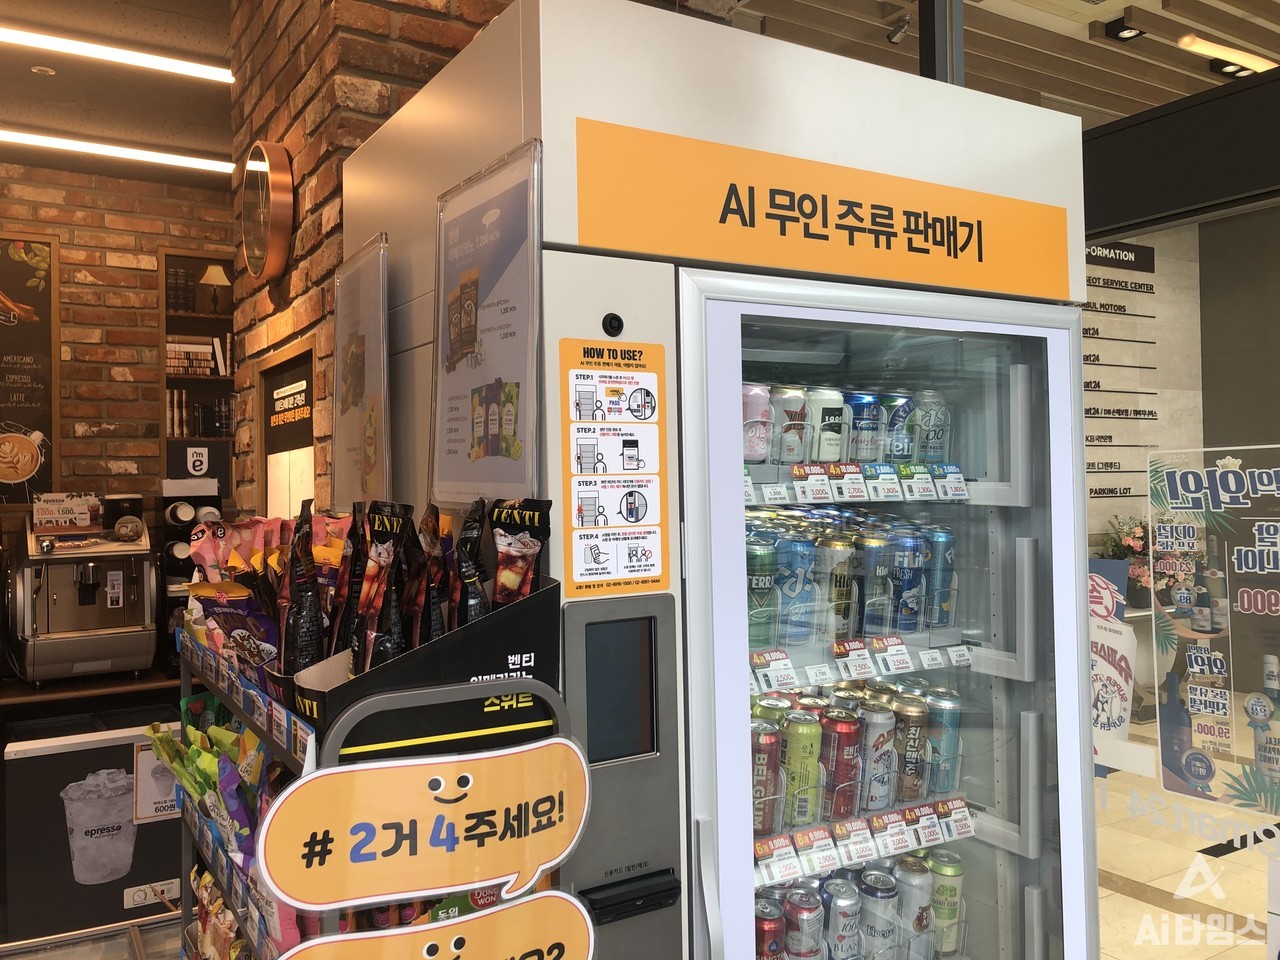 이마트24 AI 무인 주류 판매기는 사용할 줄 모르는 이들에겐 잠겨있는 냉장고에 불과했다. (사진=김동원 기자)